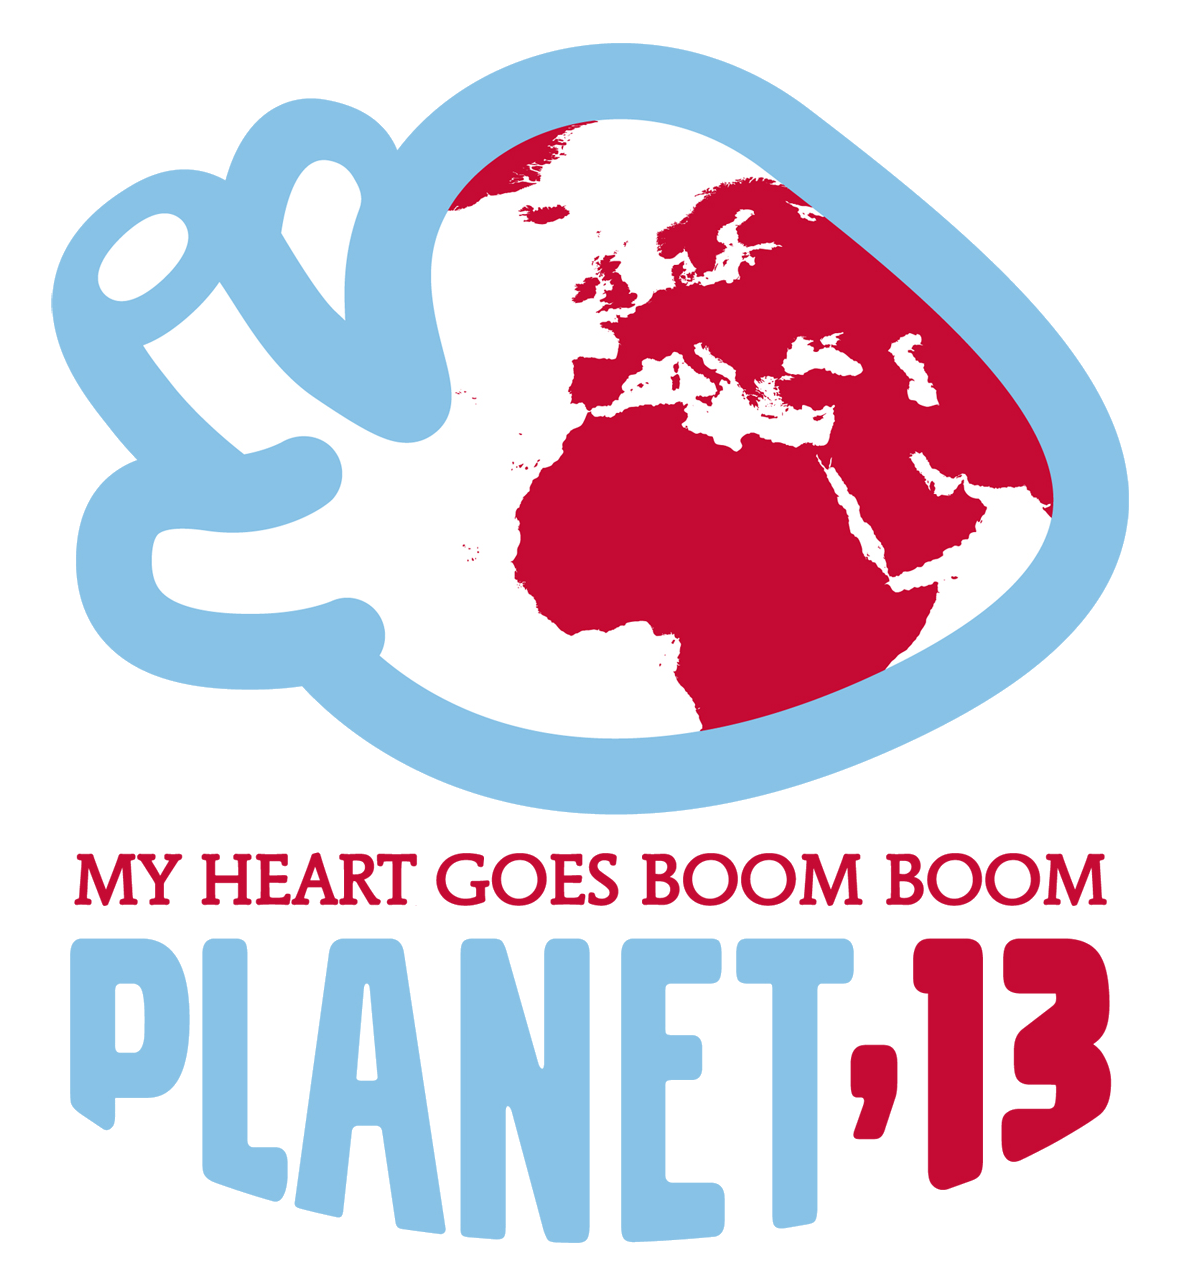 logo_planet13